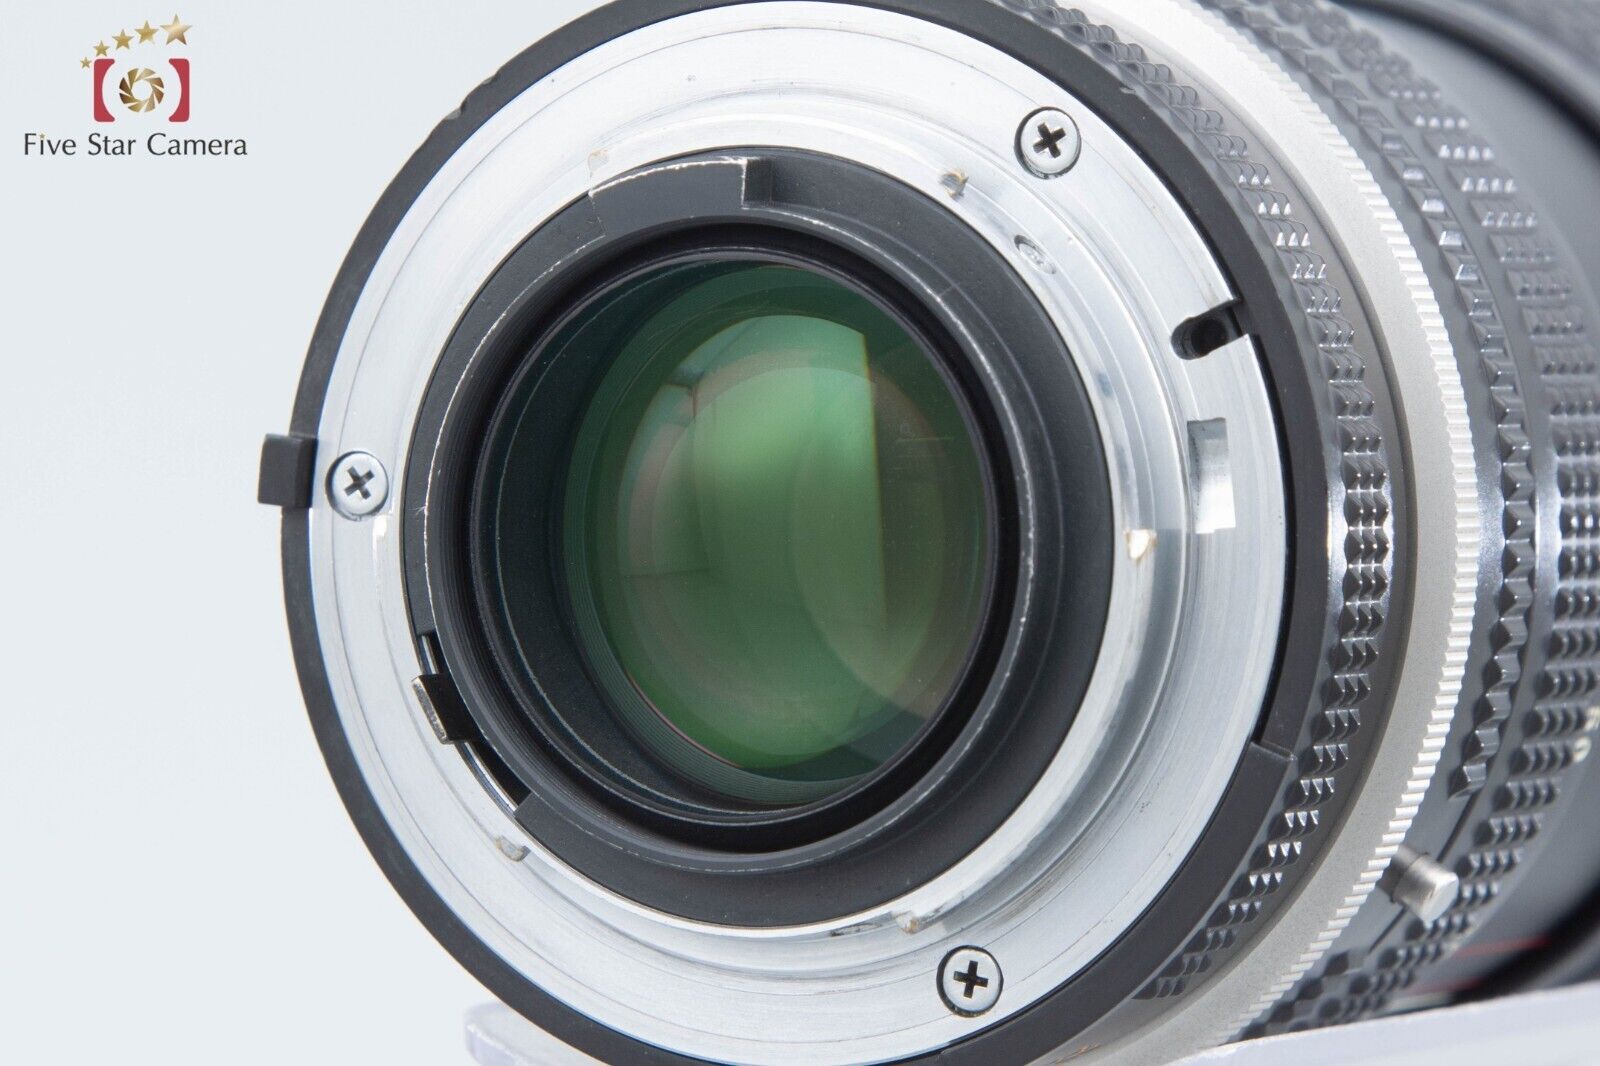 Nikon Ai-S NIKKOR 28-85mm f/3.5-4.5